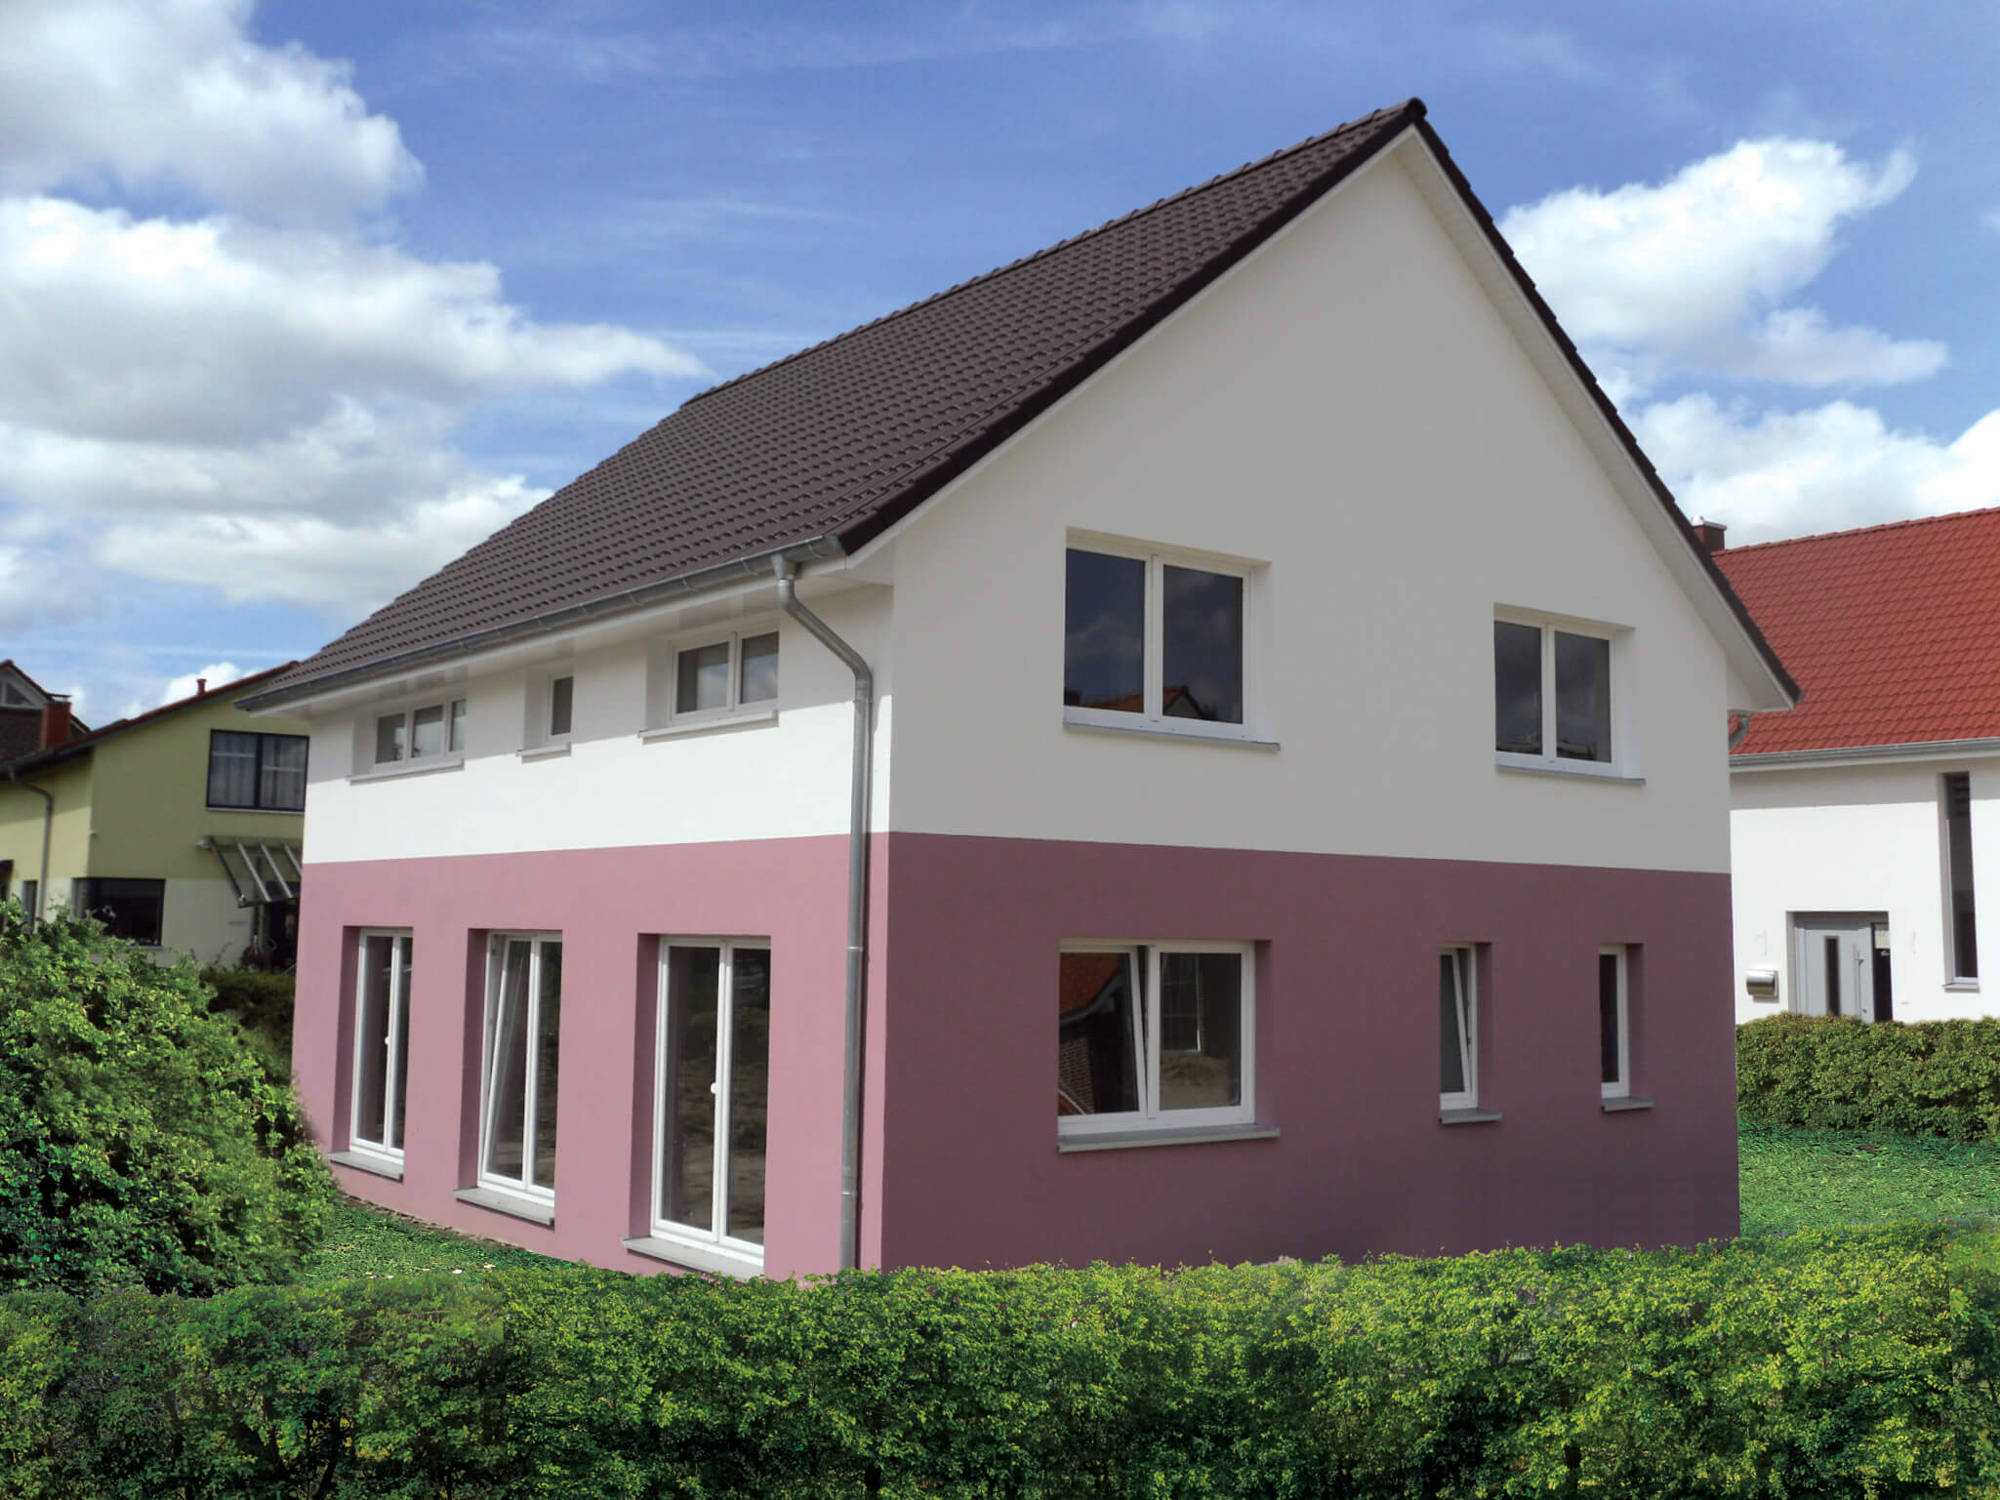 Dieses Landhaus mit über 150 m² Grundriss - schlüsselfertig gebaut im Raum Hamburg, Kiel, Neumünster, Norderstedt